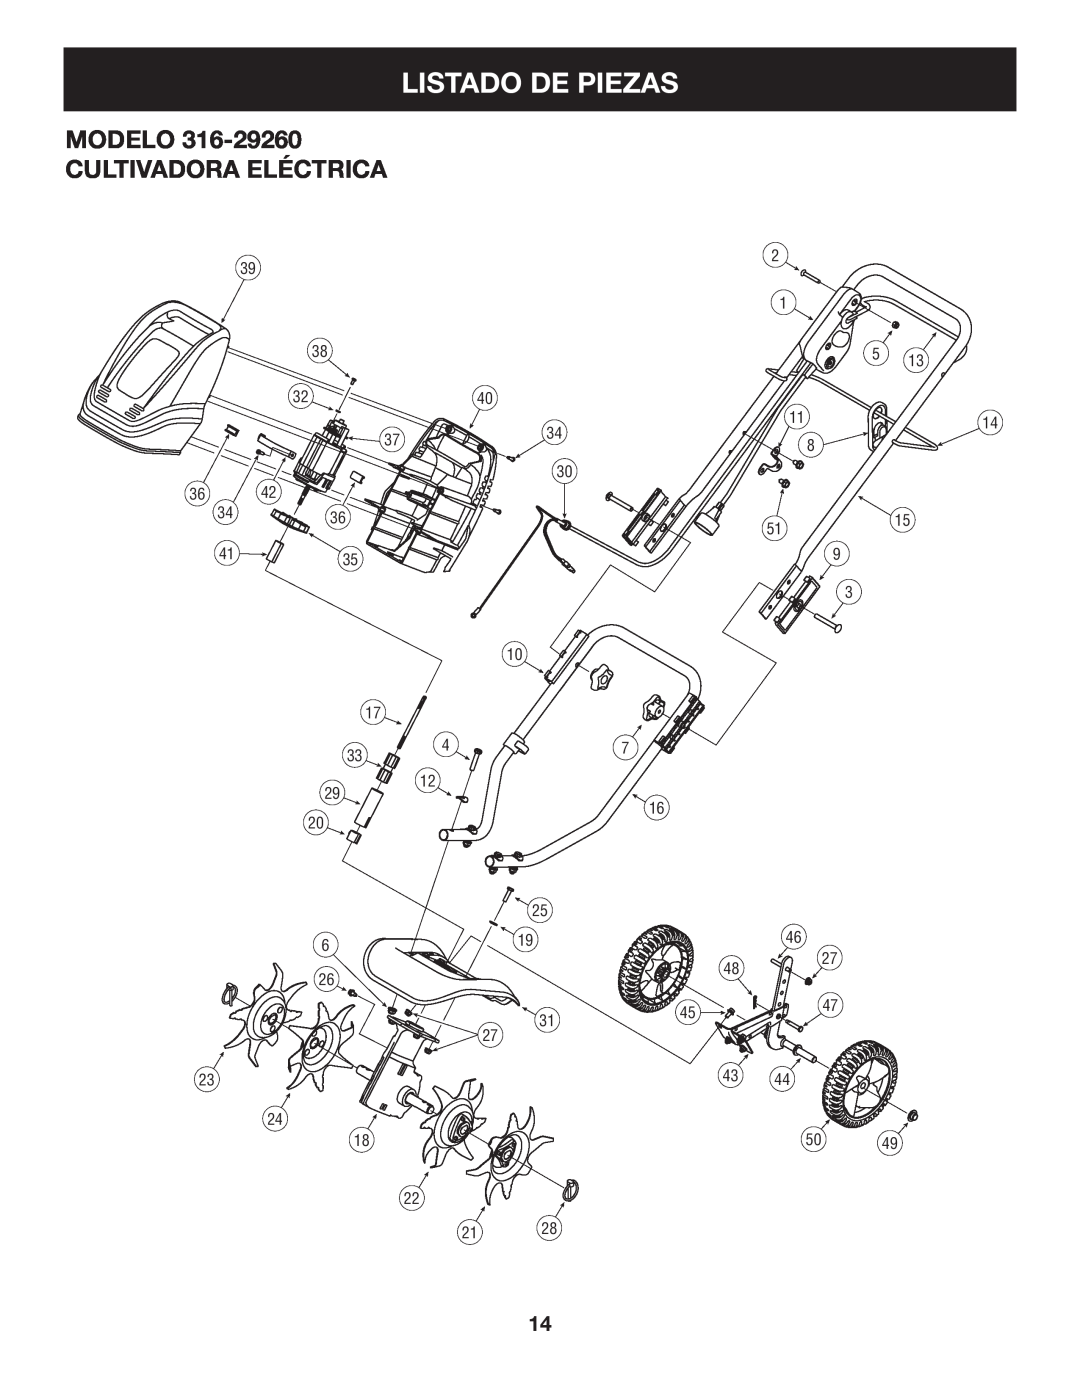 Craftsman 316.2926 manual Listado De Piezas, Modelo Cultivadora Eléctrica 